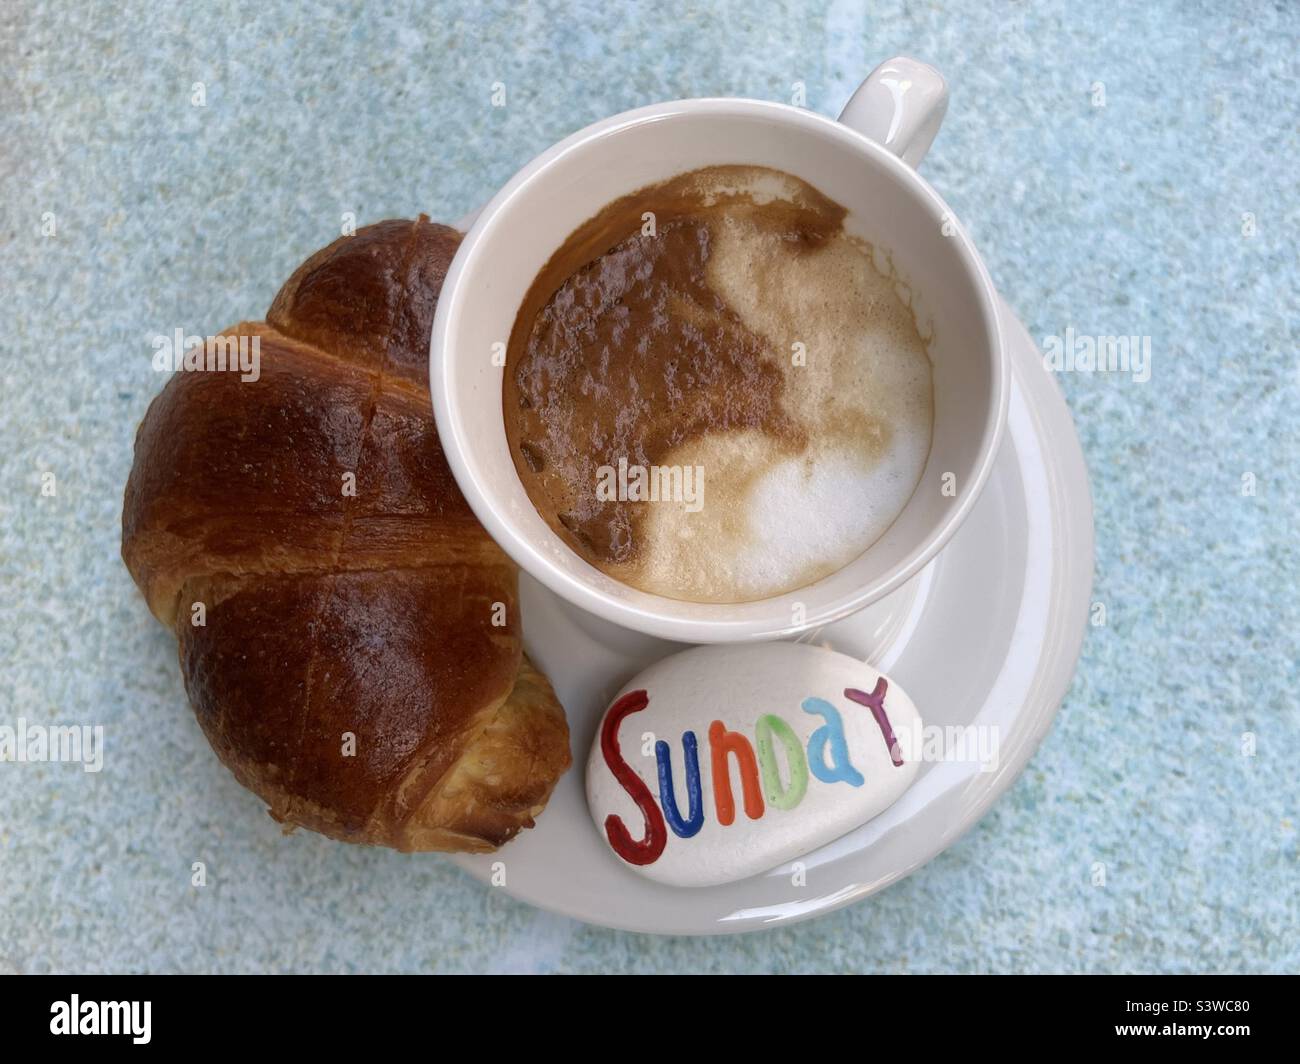 Sunday breakfast Stock Photo